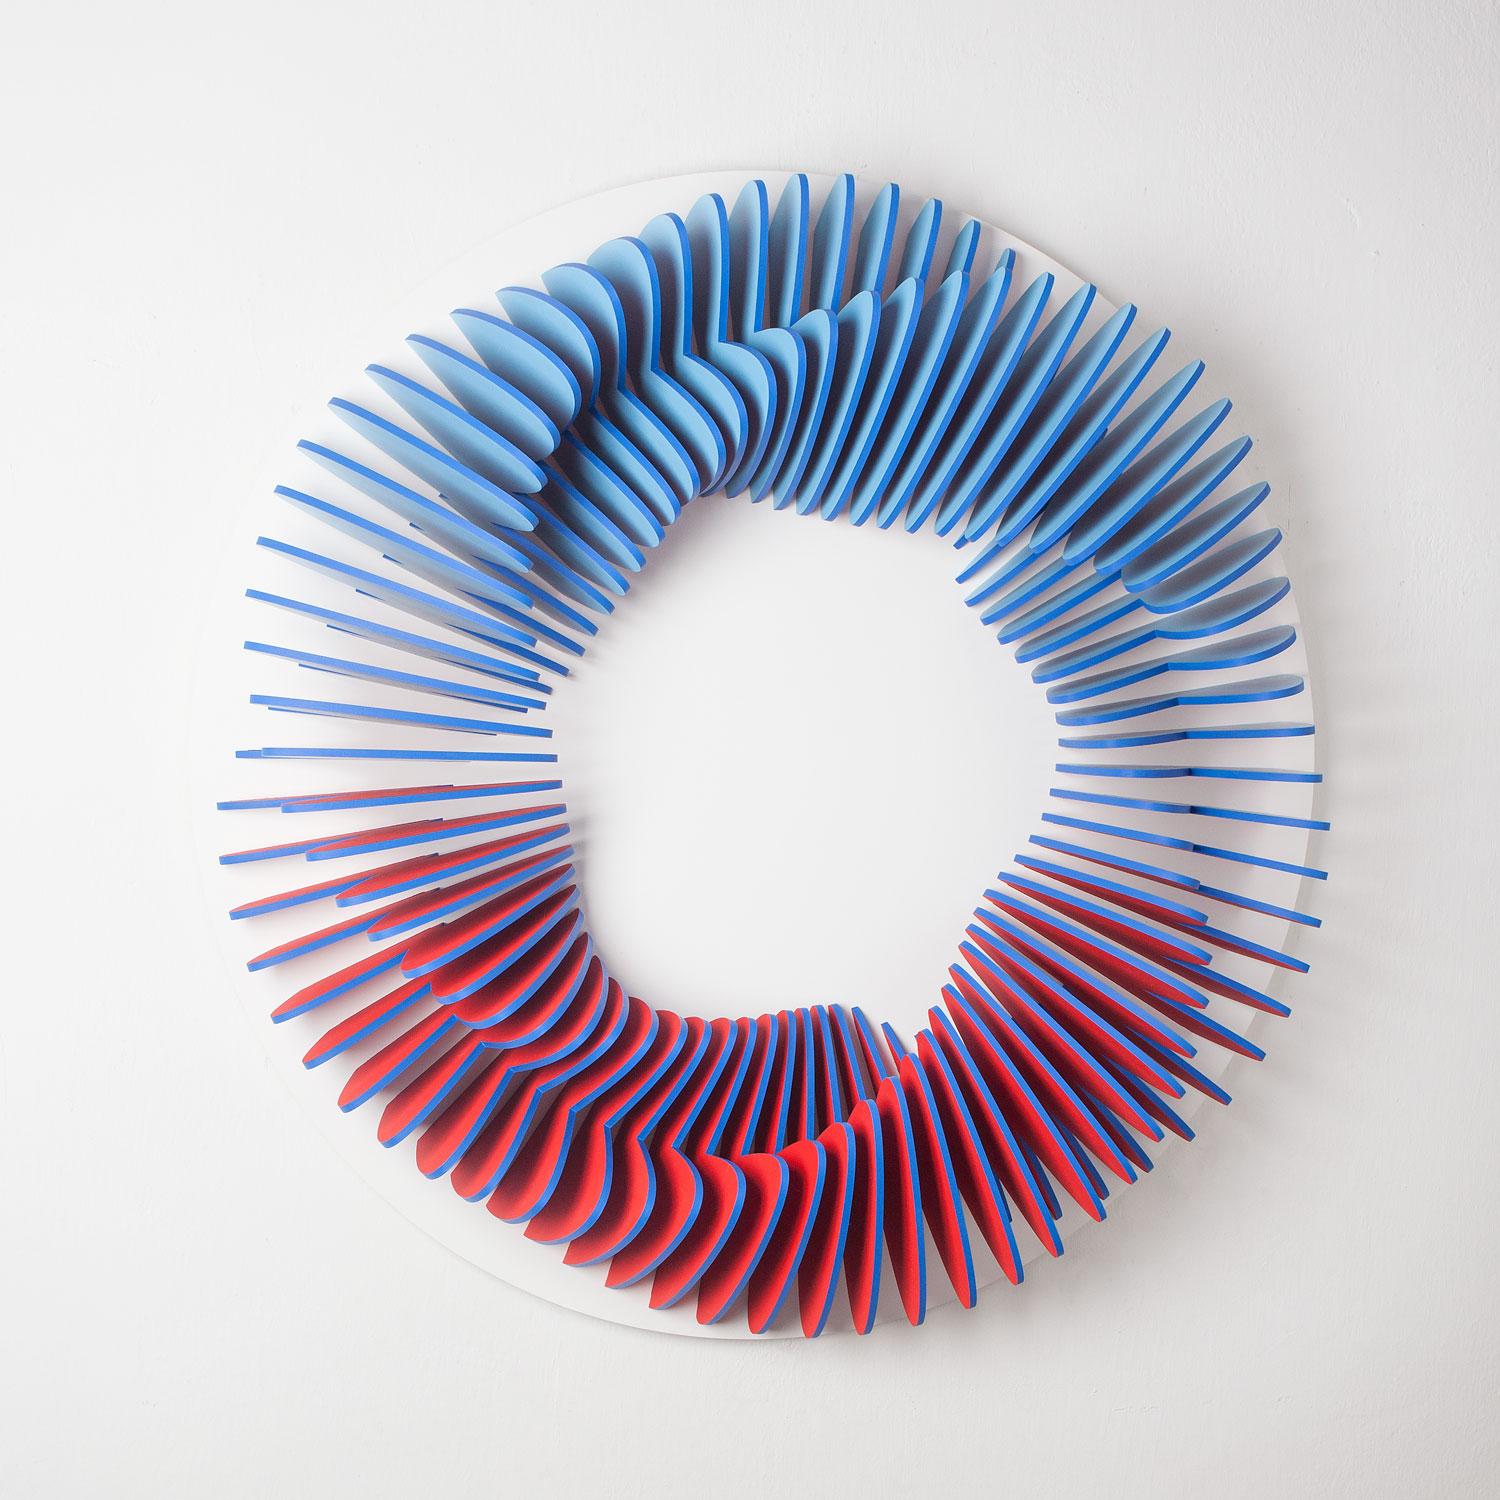 CC 100 - Blue red abstract geometric 3D wall circular sculpture - Mixed Media Art by Anna Kruhelska